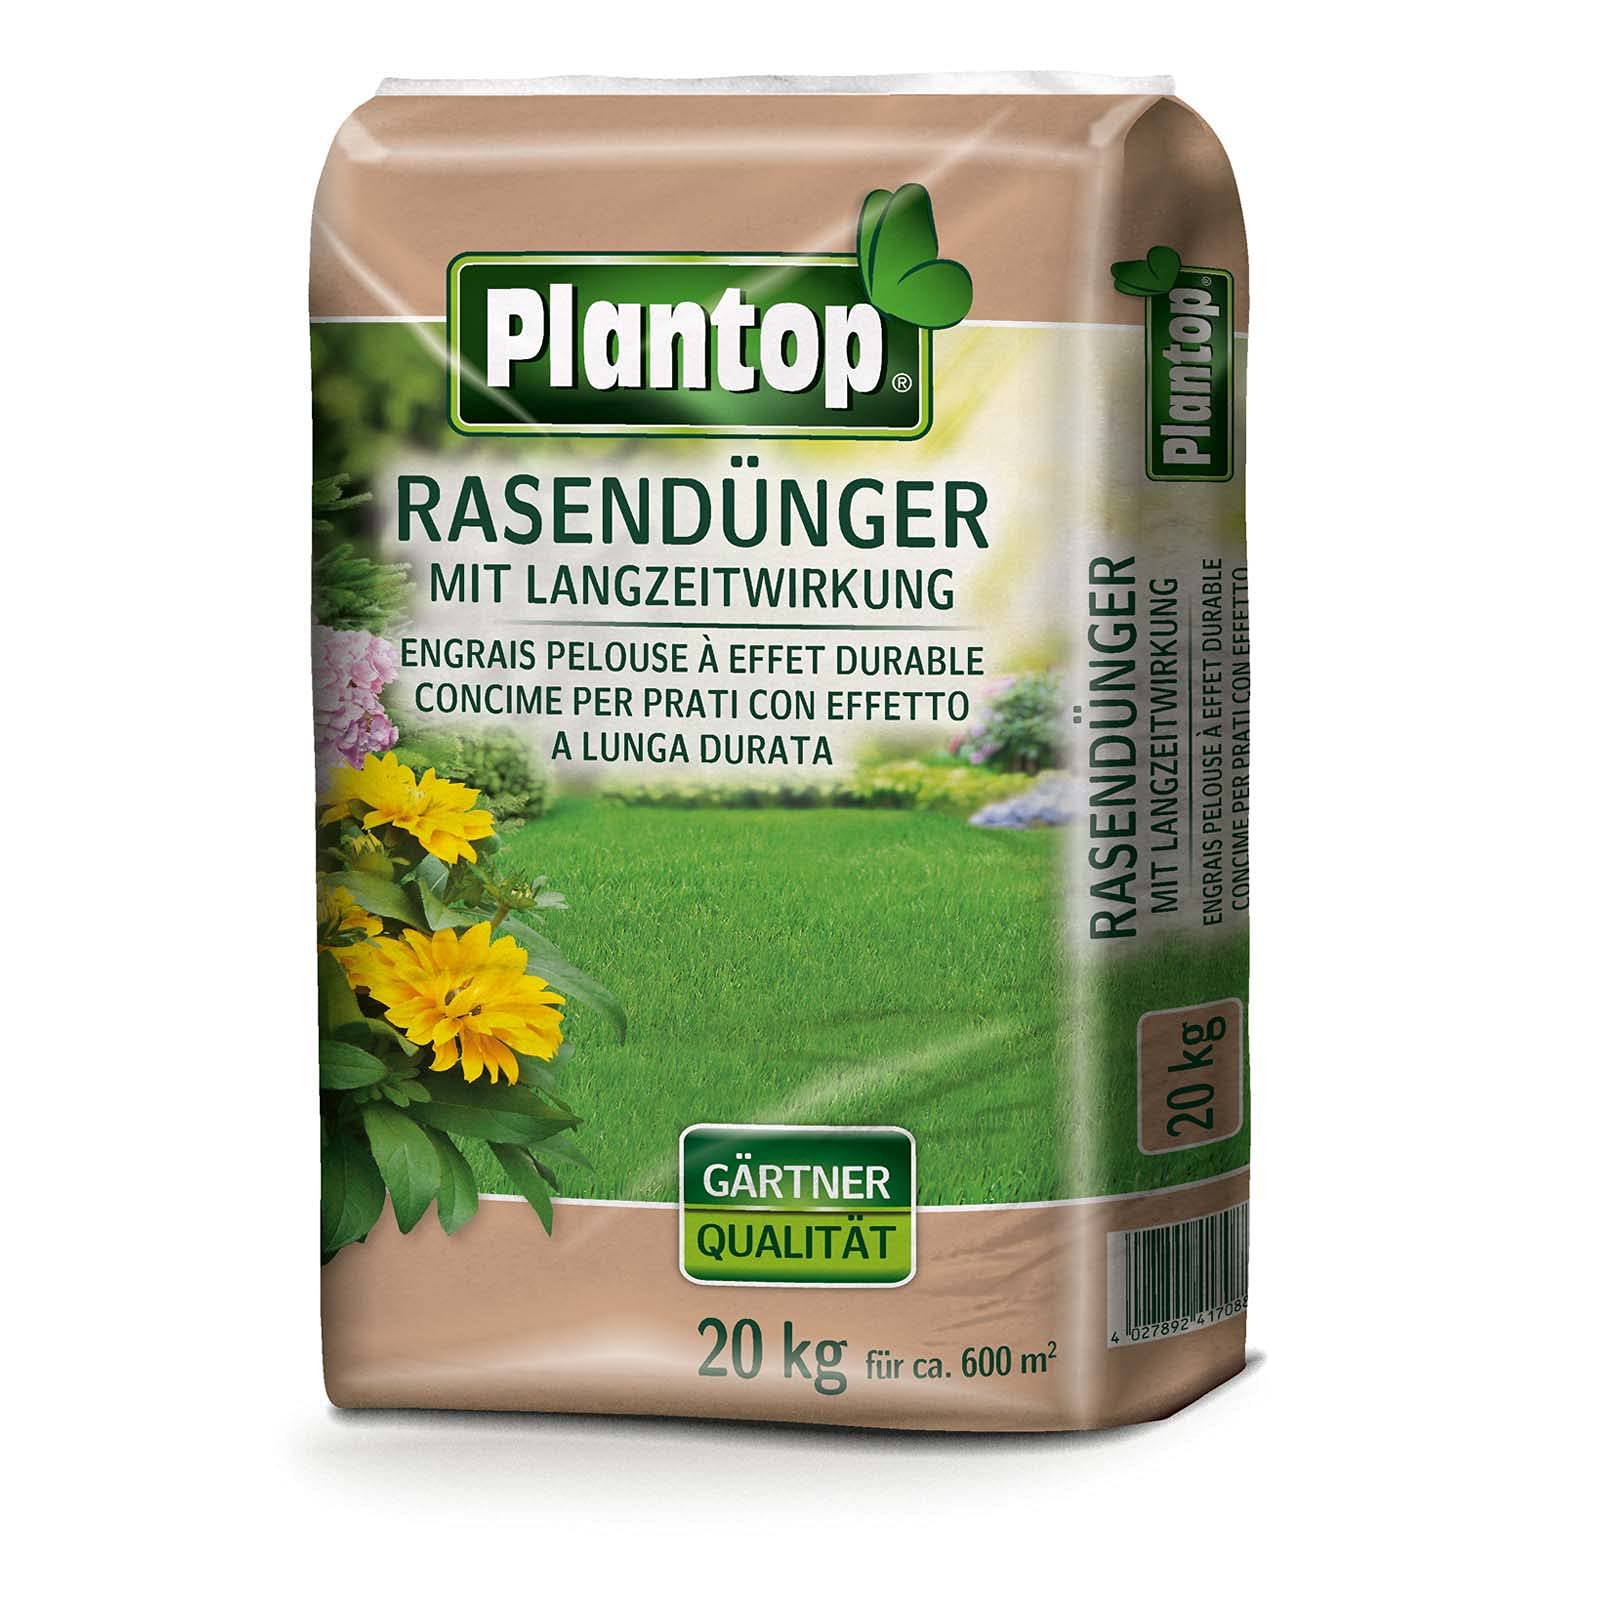 Plantop Spezial Rasendünger mit Langzeitwirkung bis 3 Monate 20 kg